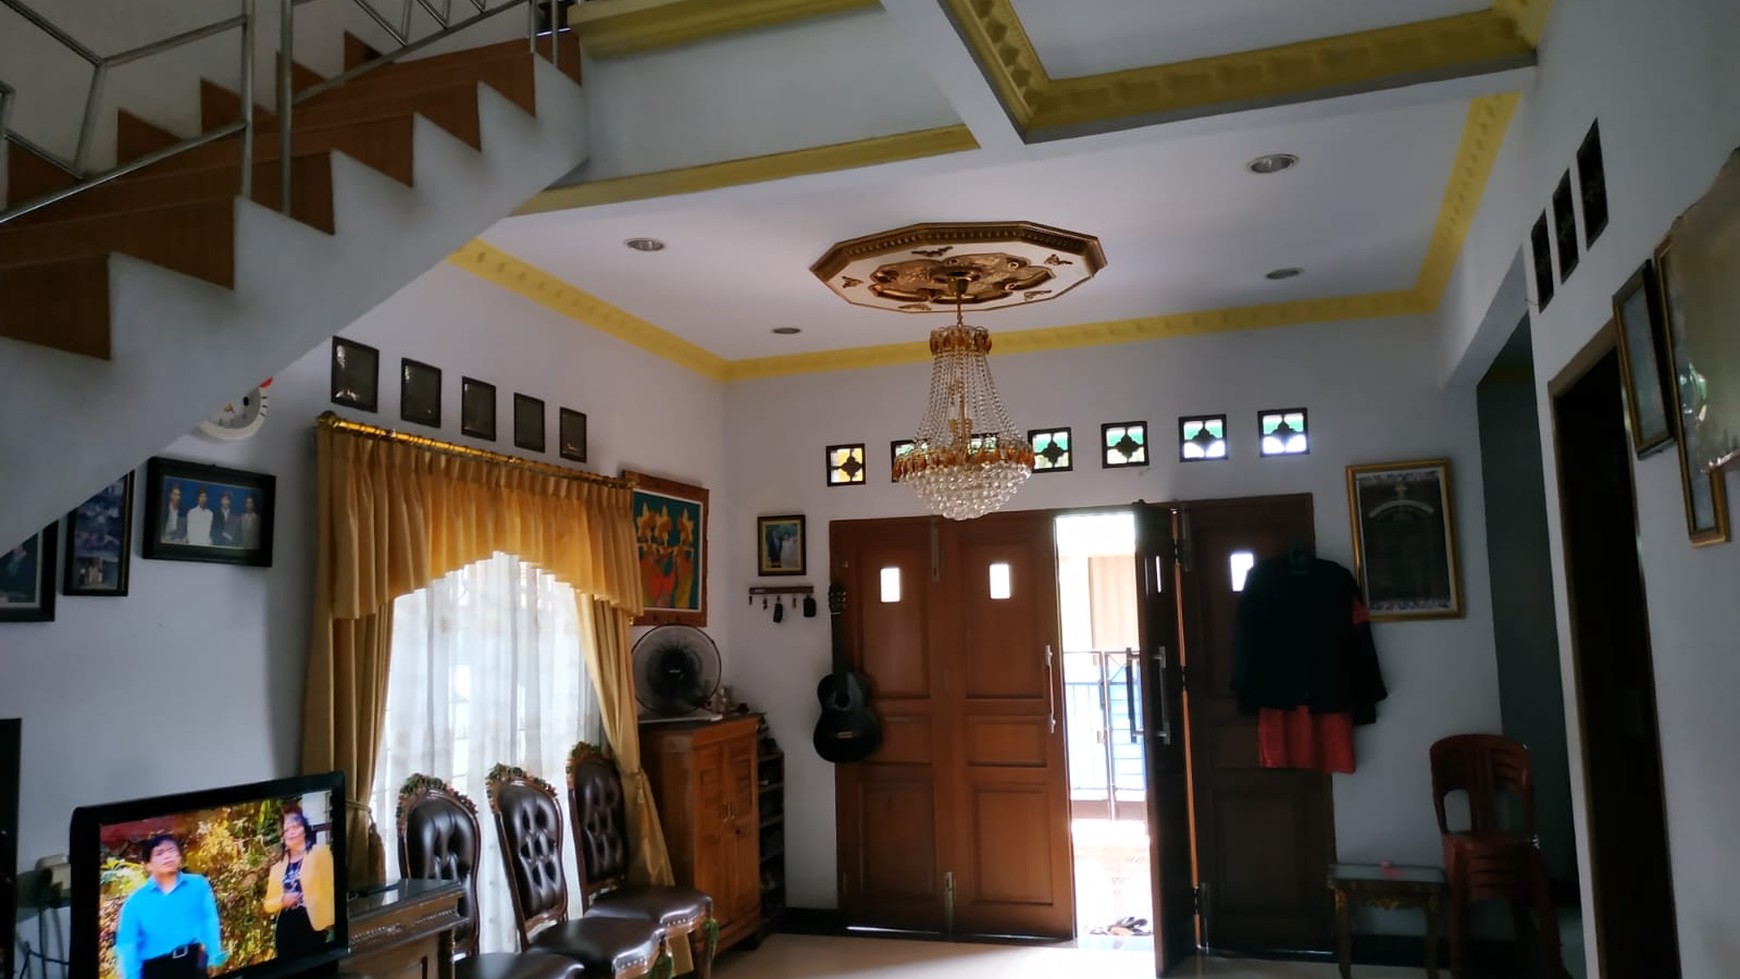 Dijual rumah Jl. Merak Raya 2 lantai posisi hoek, lingkungan sekitar nyaman di Perumnas,Tangerang.